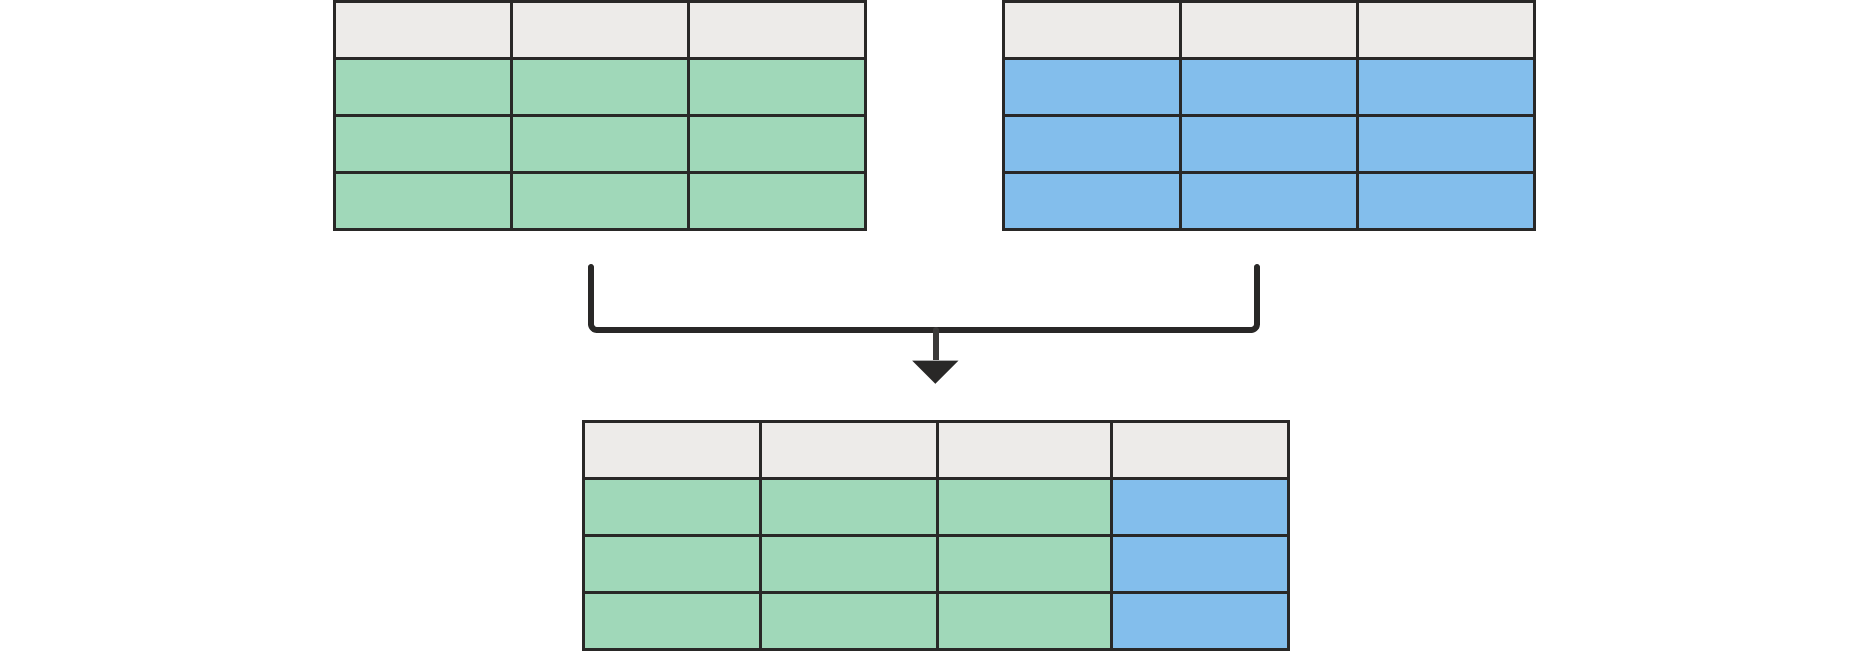 Diagramma che mostra due tabelle vuote in alto unite a una tabella nella parte inferiore con tutte le colonne della tabella a sinistra e una dalla tabella a destra.